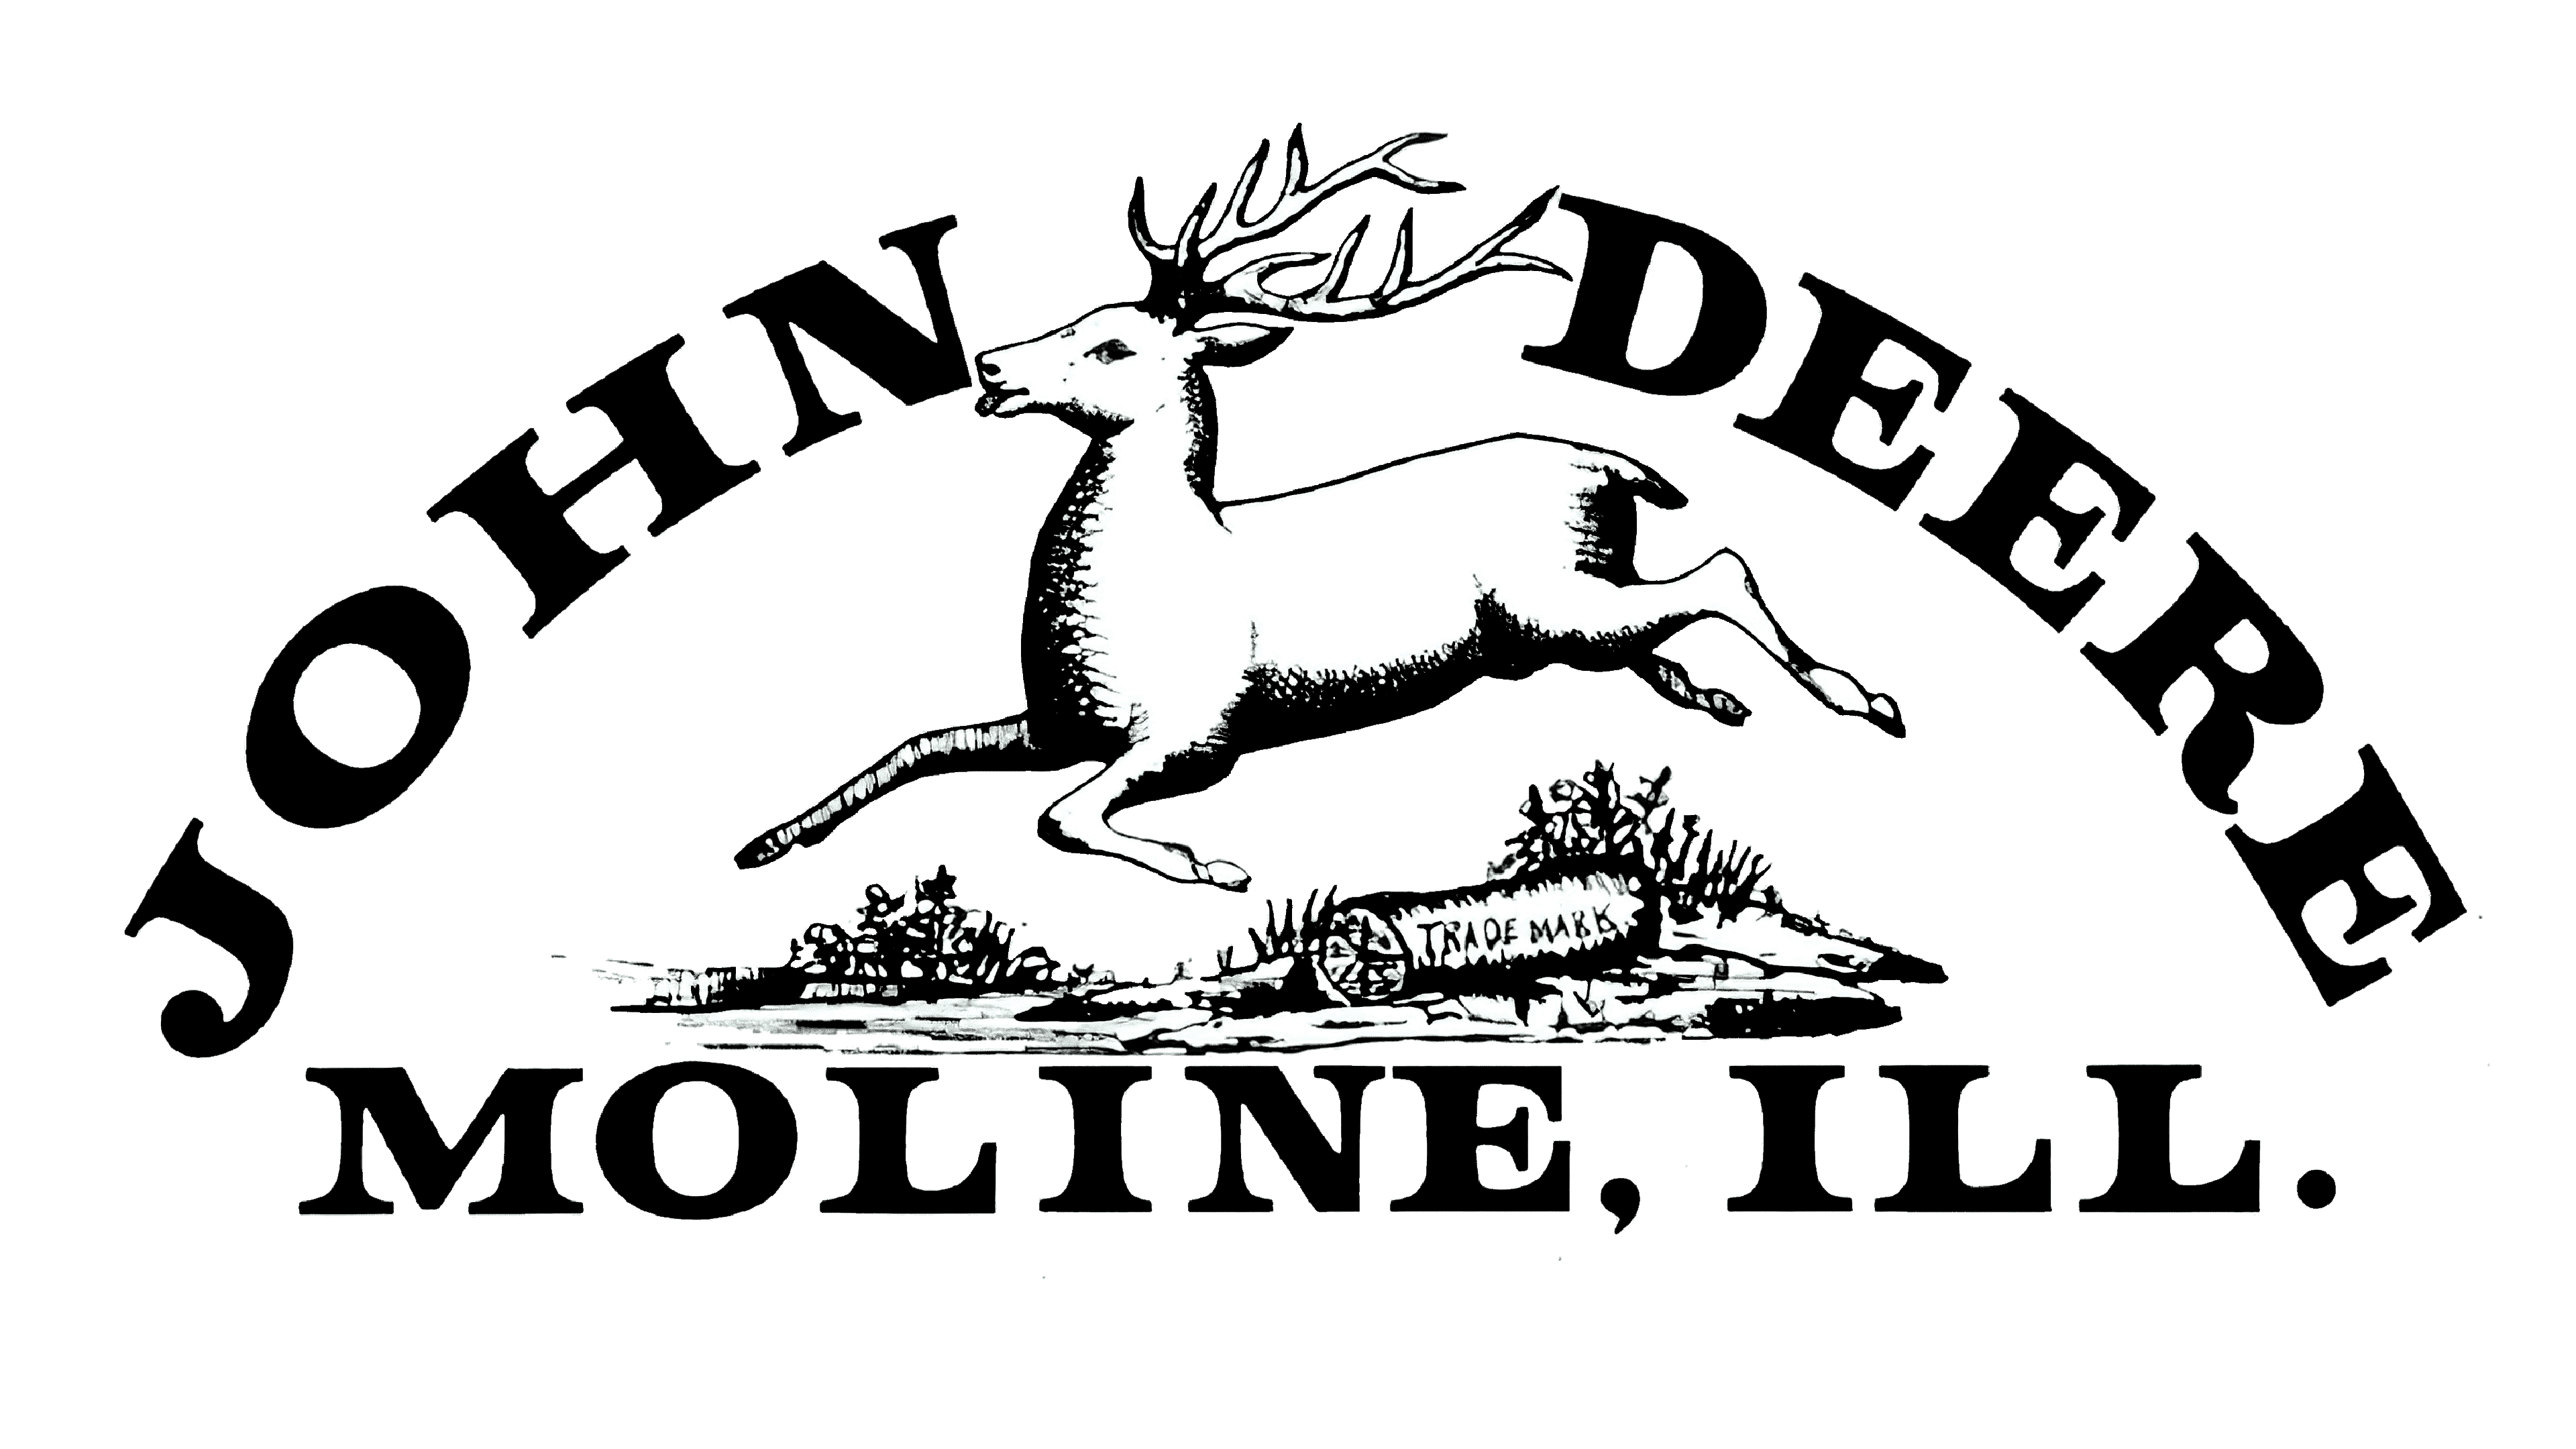 John Deere Logo PNG Image - PurePNG